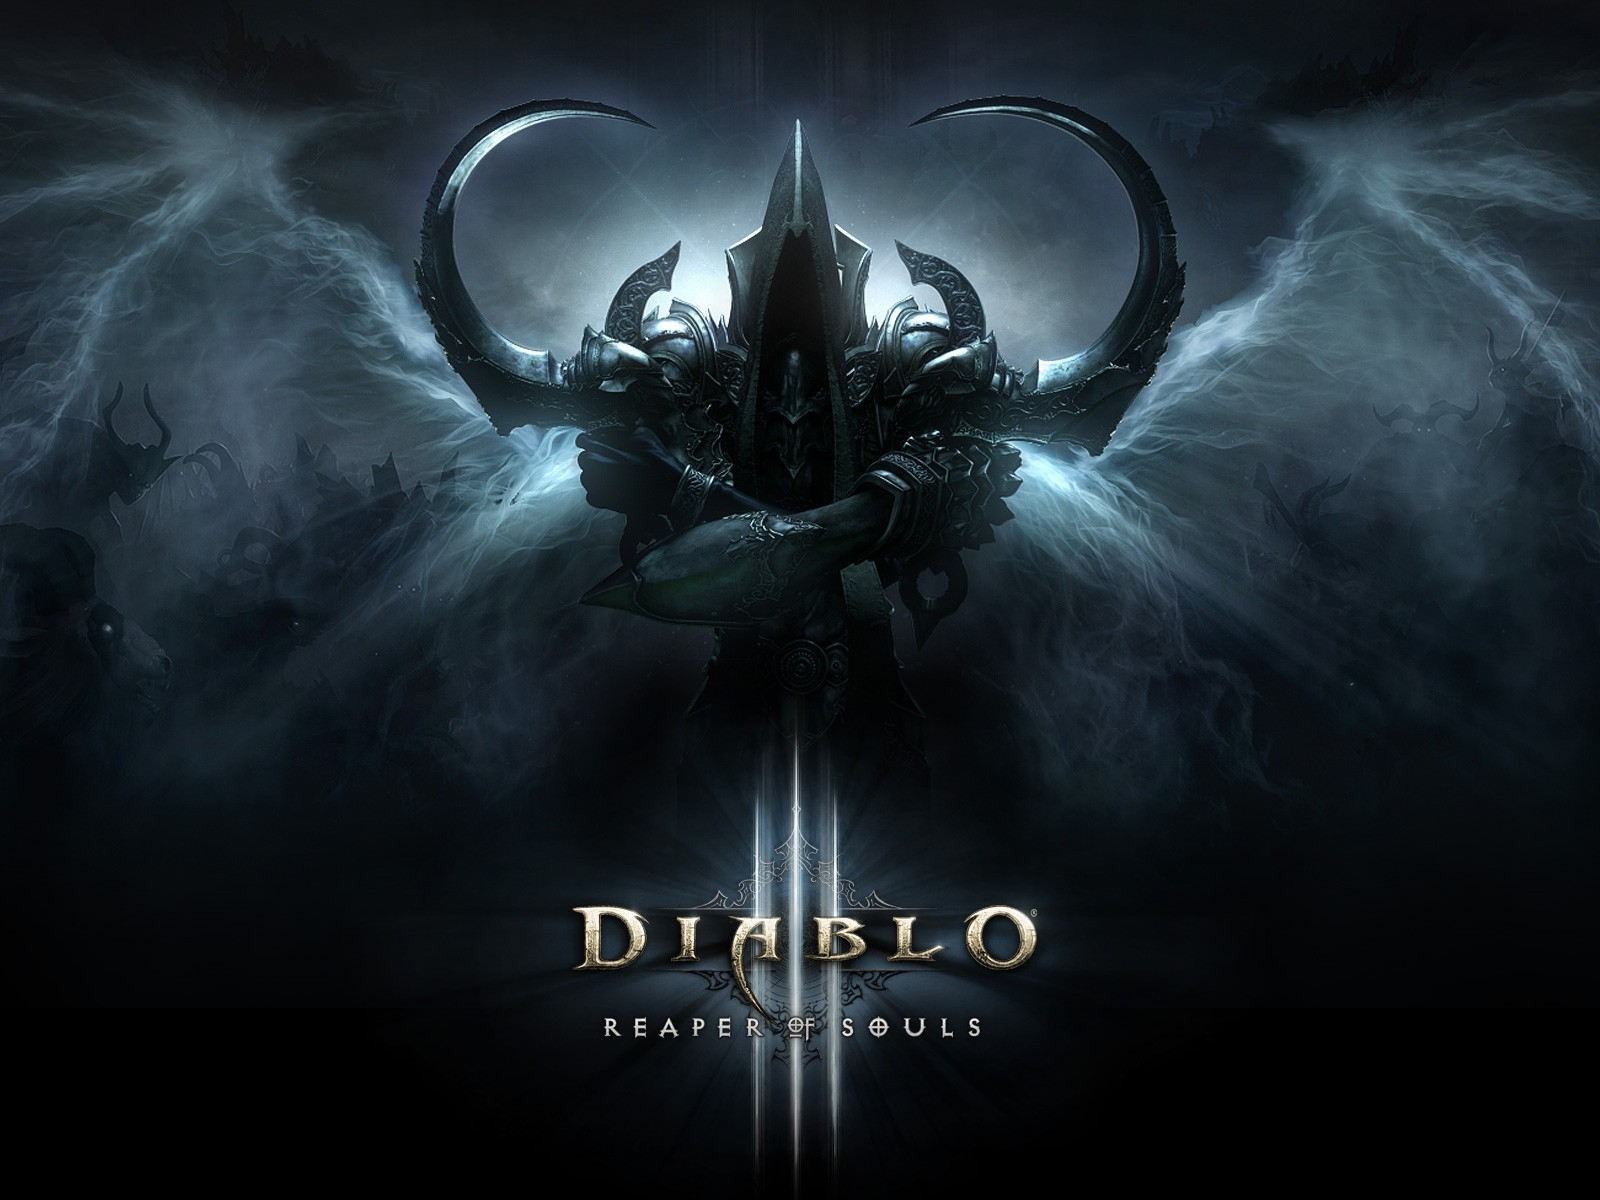 Reaper of Souls Diablo III for 1600 x 1200 resolution